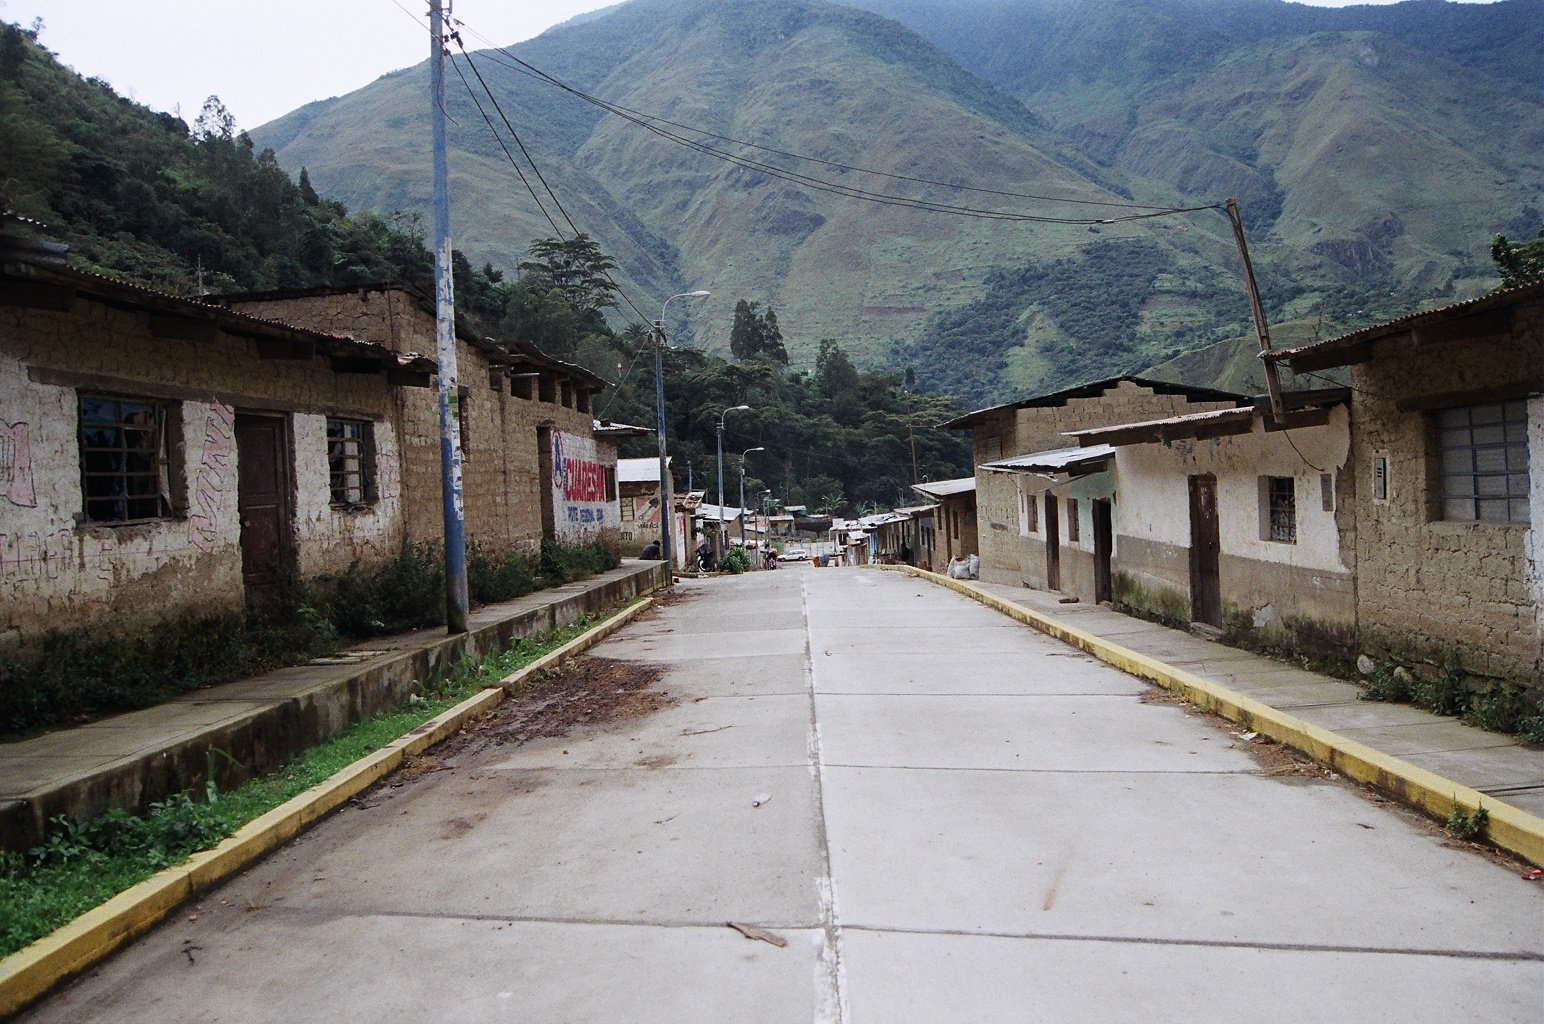   Santa Teresa, Peru. &nbsp;35mm film, 2014. 